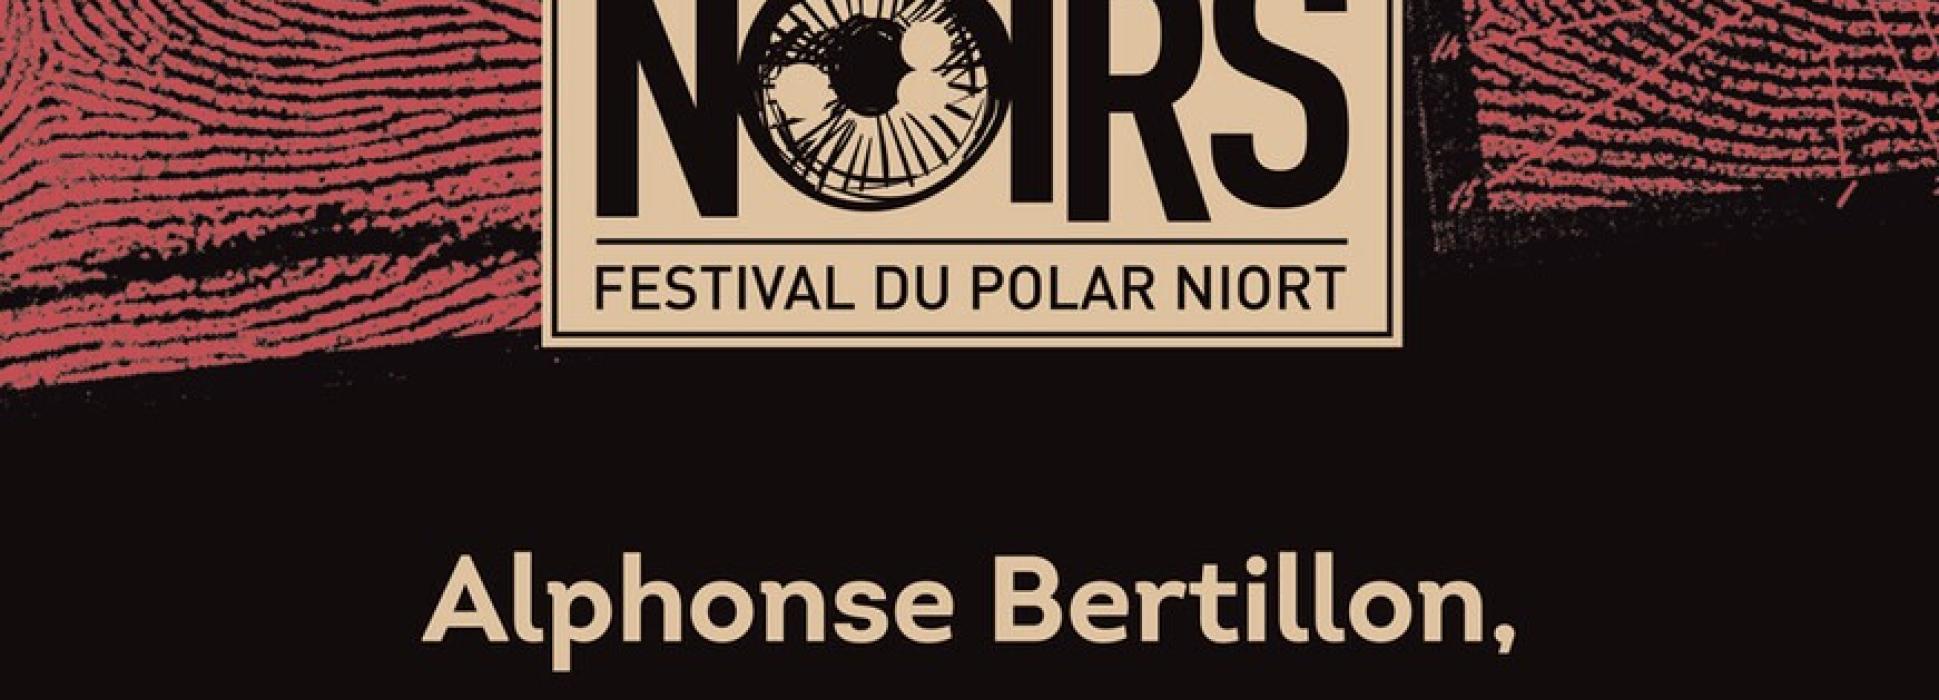 La ville de Niort propose une exposition sur les traces d’Alphonse Bertillon